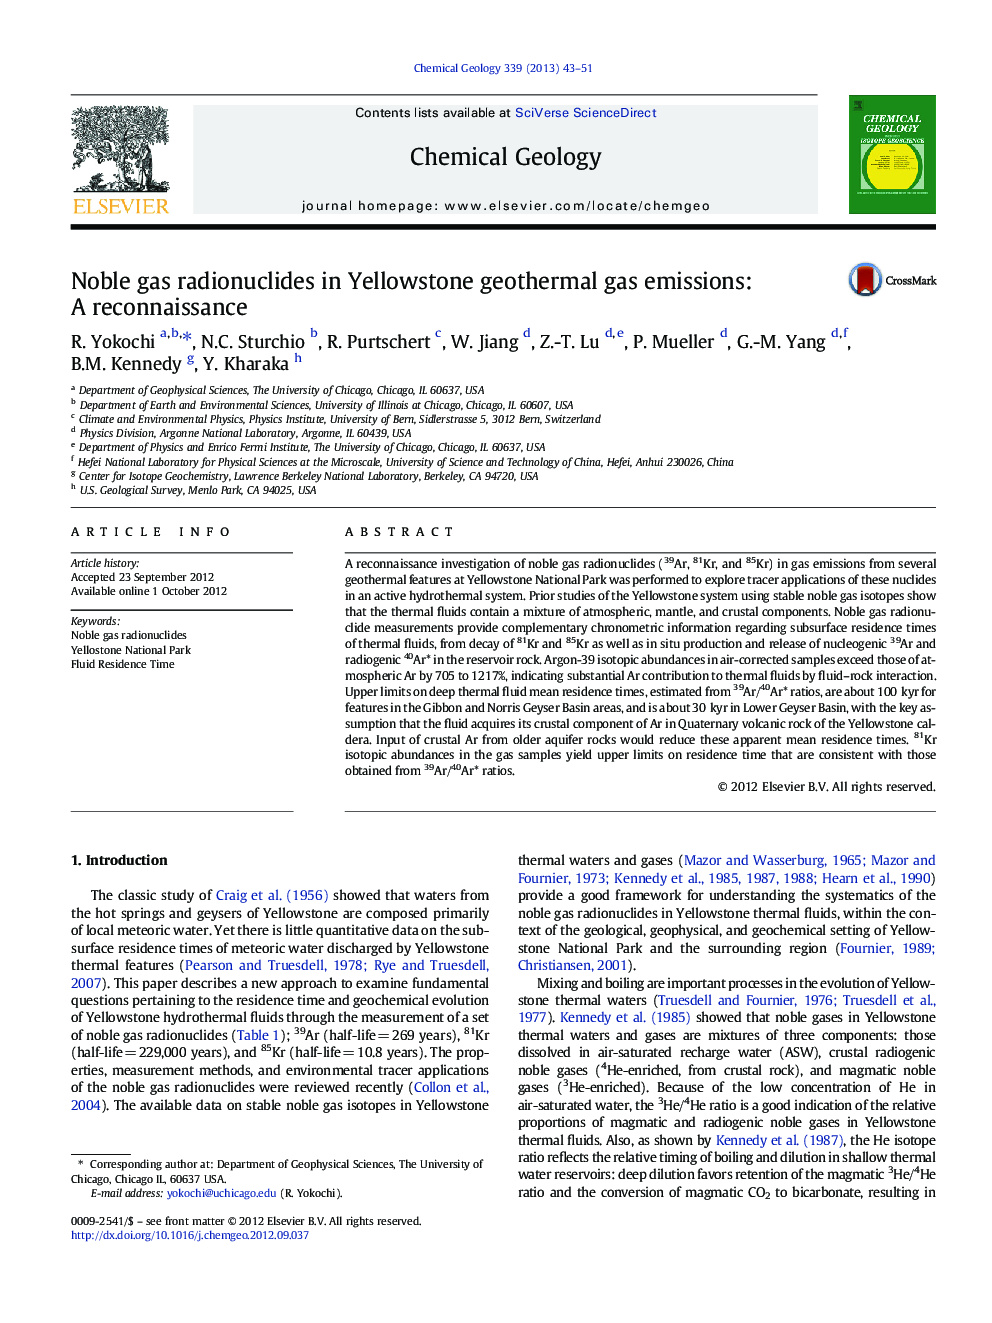 رادیونوکلئید های نجیب گاز در انتشار گازهای ژئوترمال یلوستون: شناسایی 